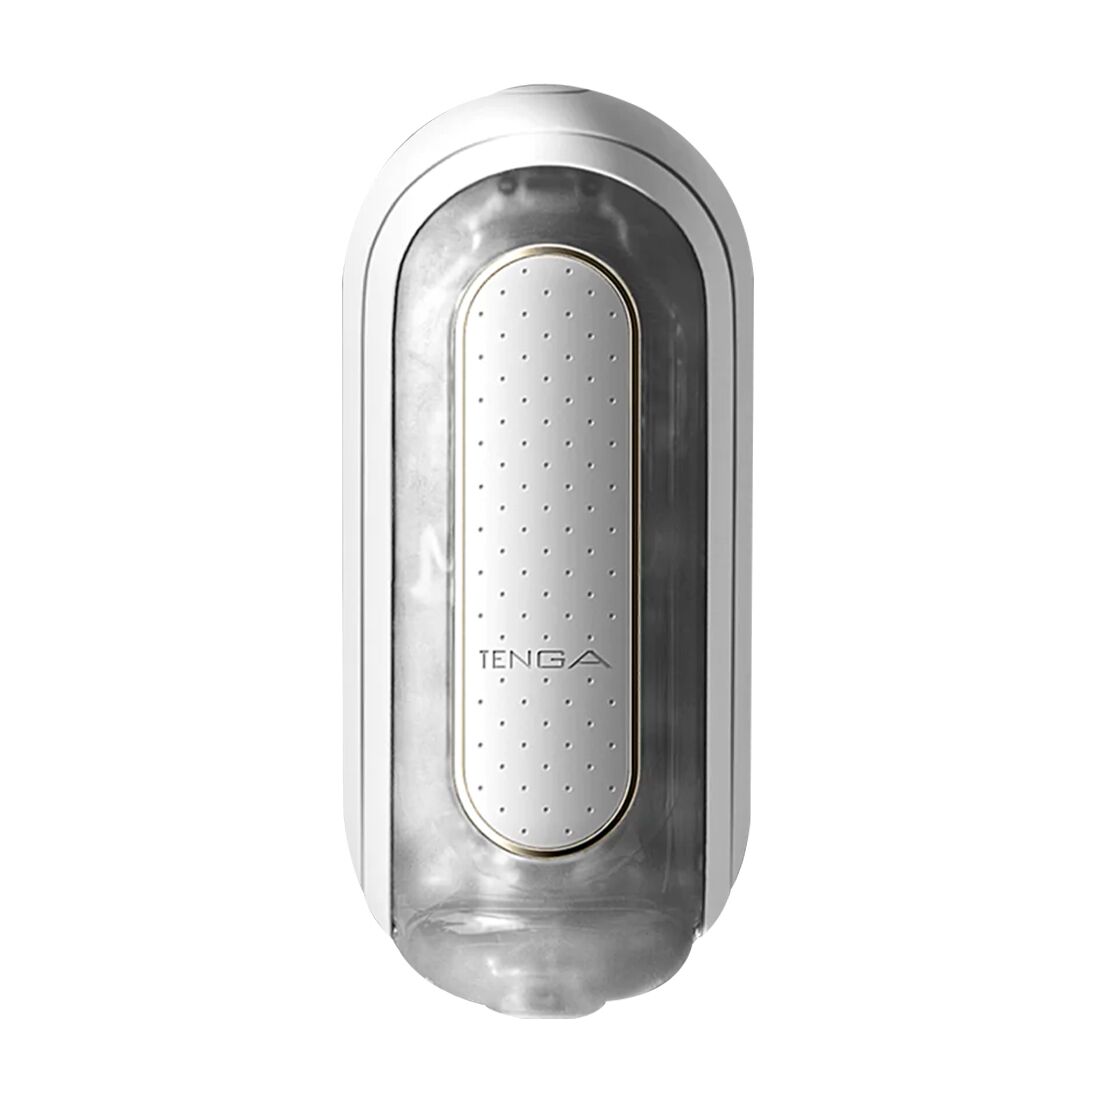 Вибромастурбато�р Tenga Flip Zero Electronic Vibration White, изменяемая интенсивность, раскладной